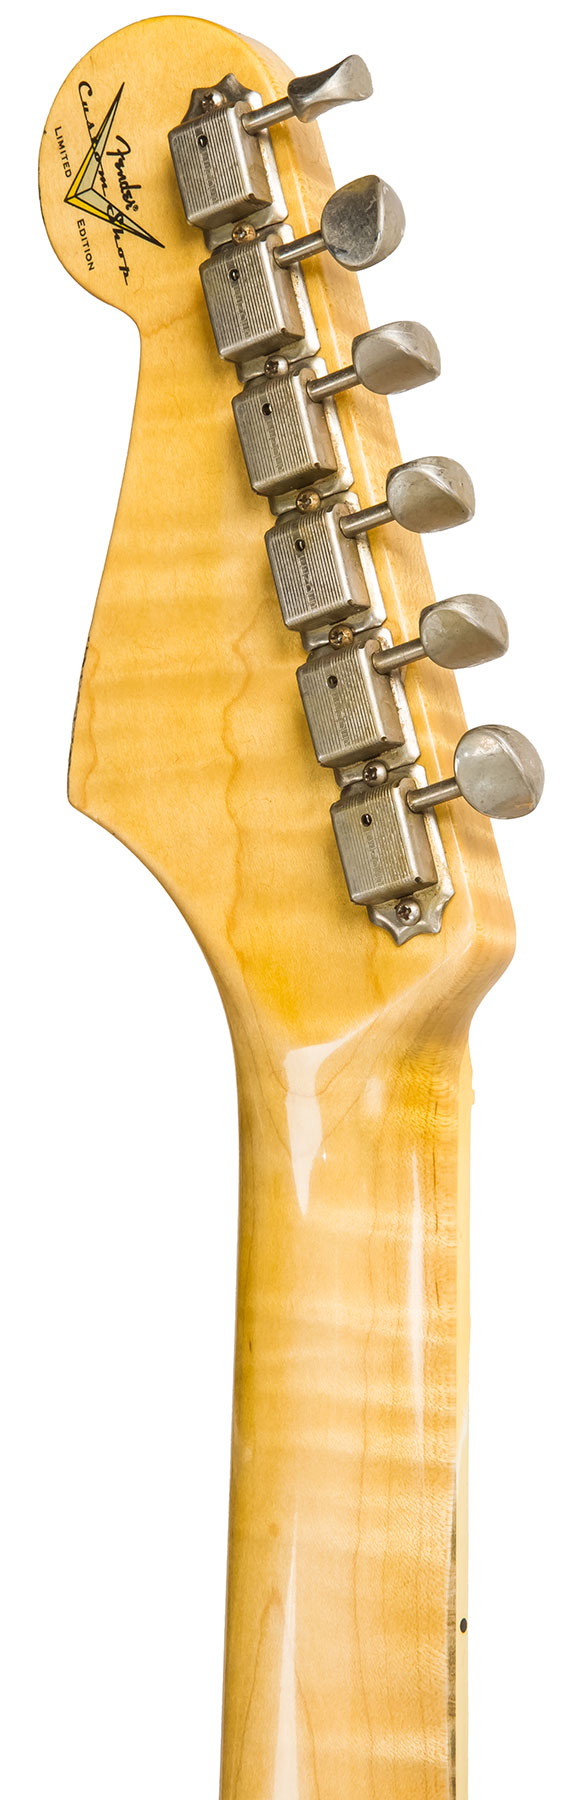 Fender Custom Shop Strat 1965 Ltd Usa Rw #cz548544 - Relic Daphne Blue Sparkle - Elektrische gitaar in Str-vorm - Variation 6